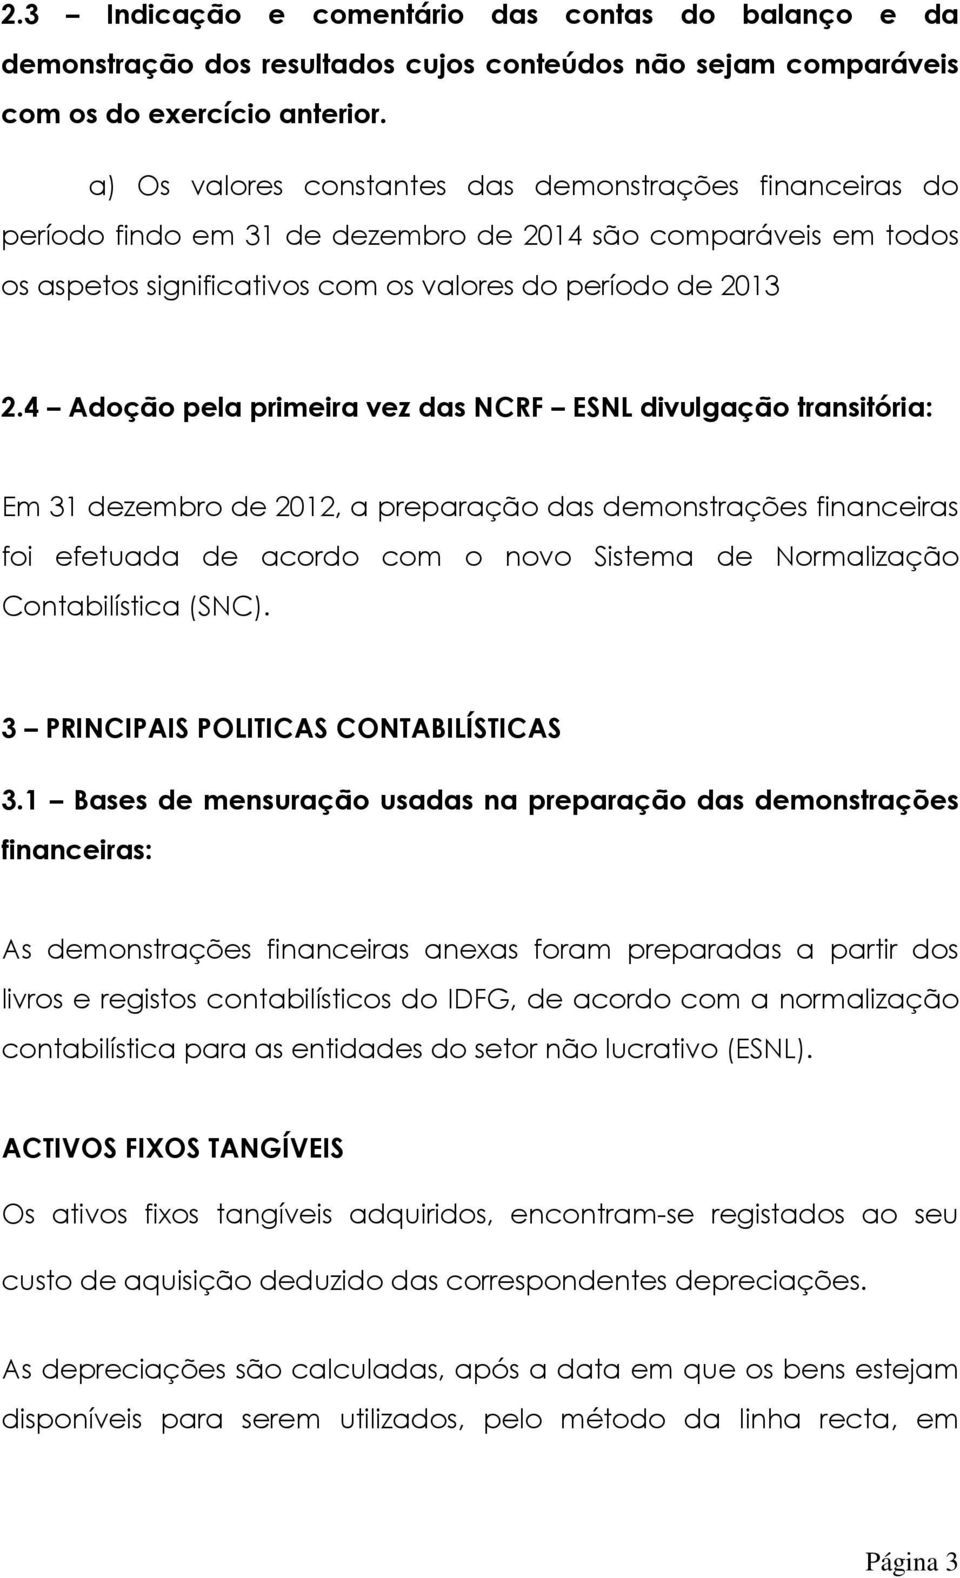 4 Adoção pela primeira vez das NCRF ESNL divulgação transitória: Em 31 dezembro de 2012, a preparação das demonstrações financeiras foi efetuada de acordo com o novo Sistema de Normalização